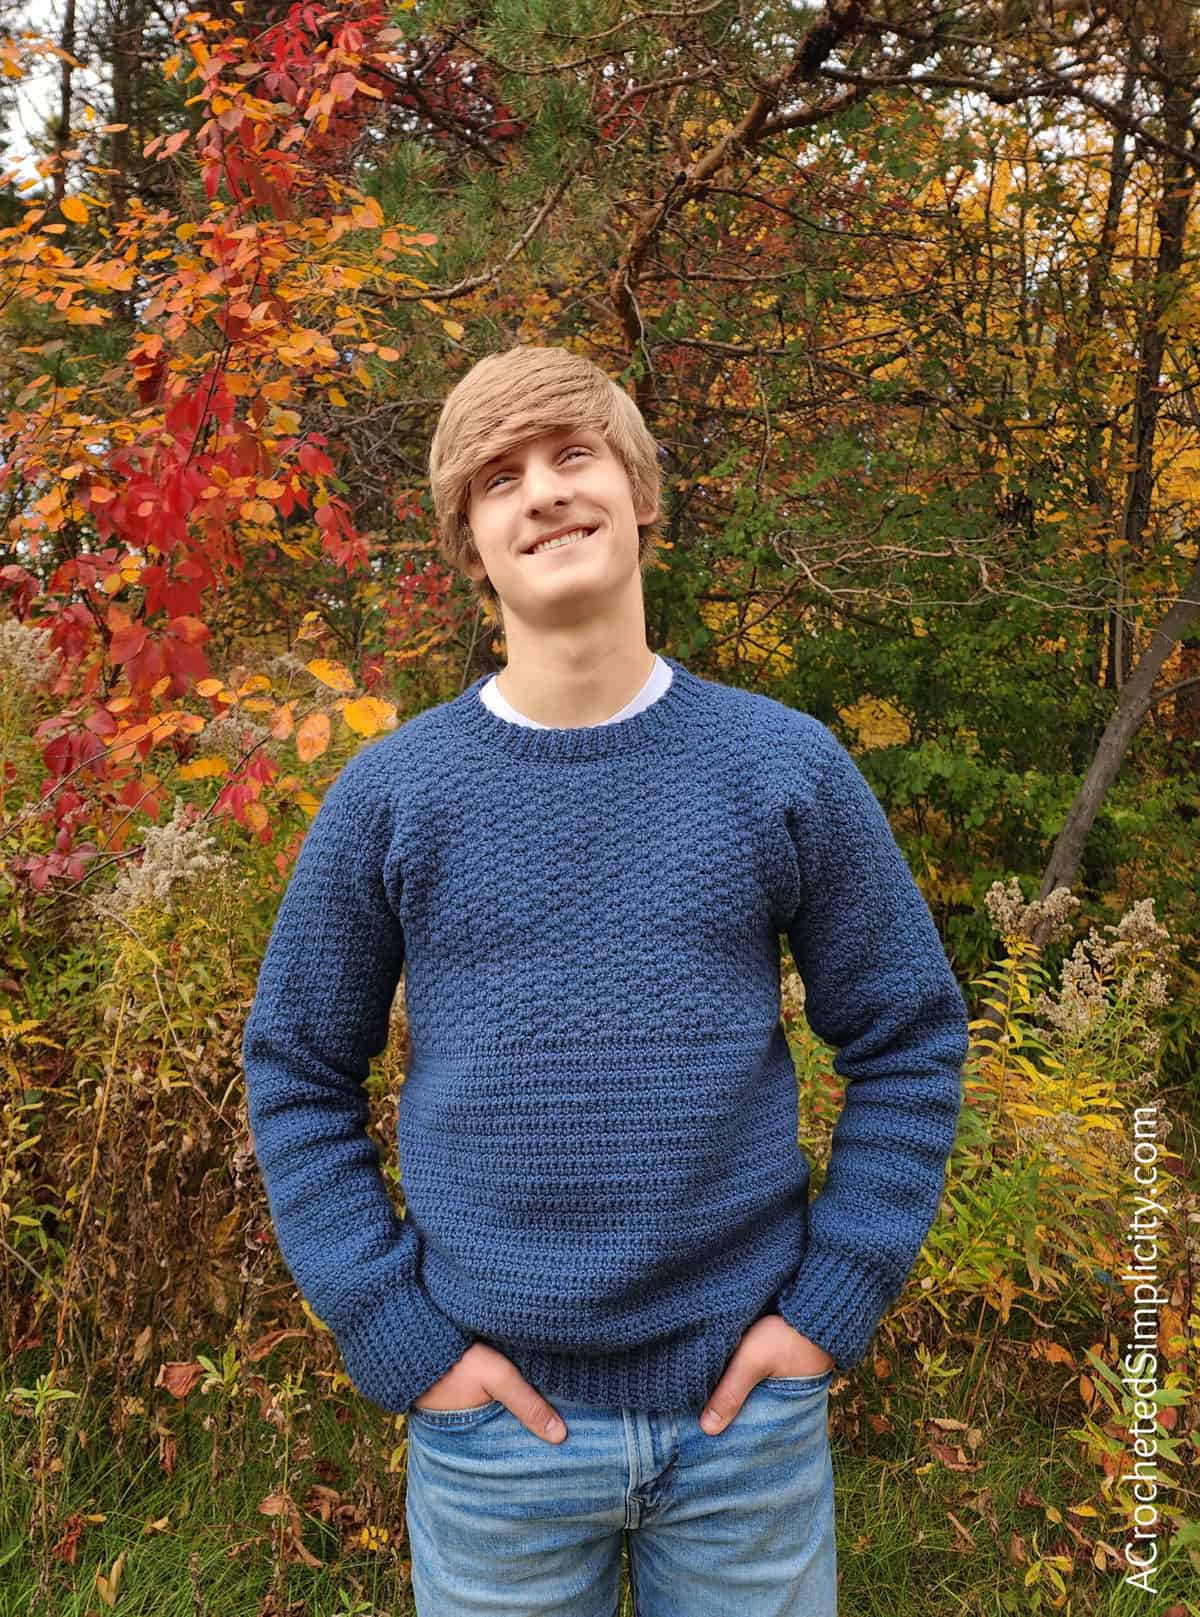 Men's Split Level Pullover - Free Crochet Sweater Pattern - A